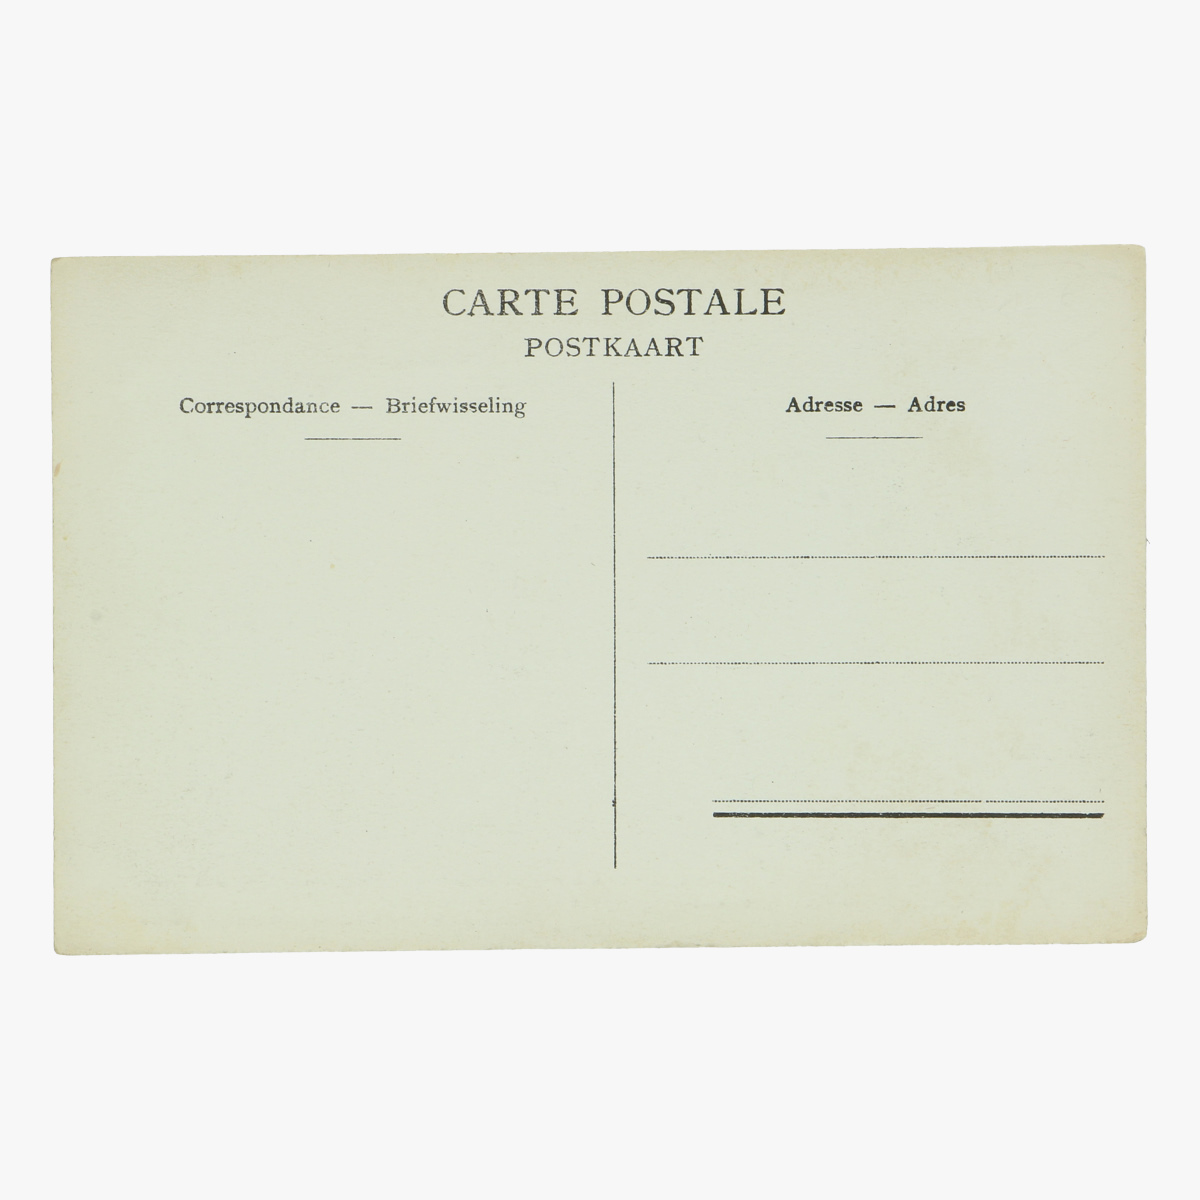 Afbeeldingen van postkaart bruxelles exposition 1910 de ingang van brussel kermesse